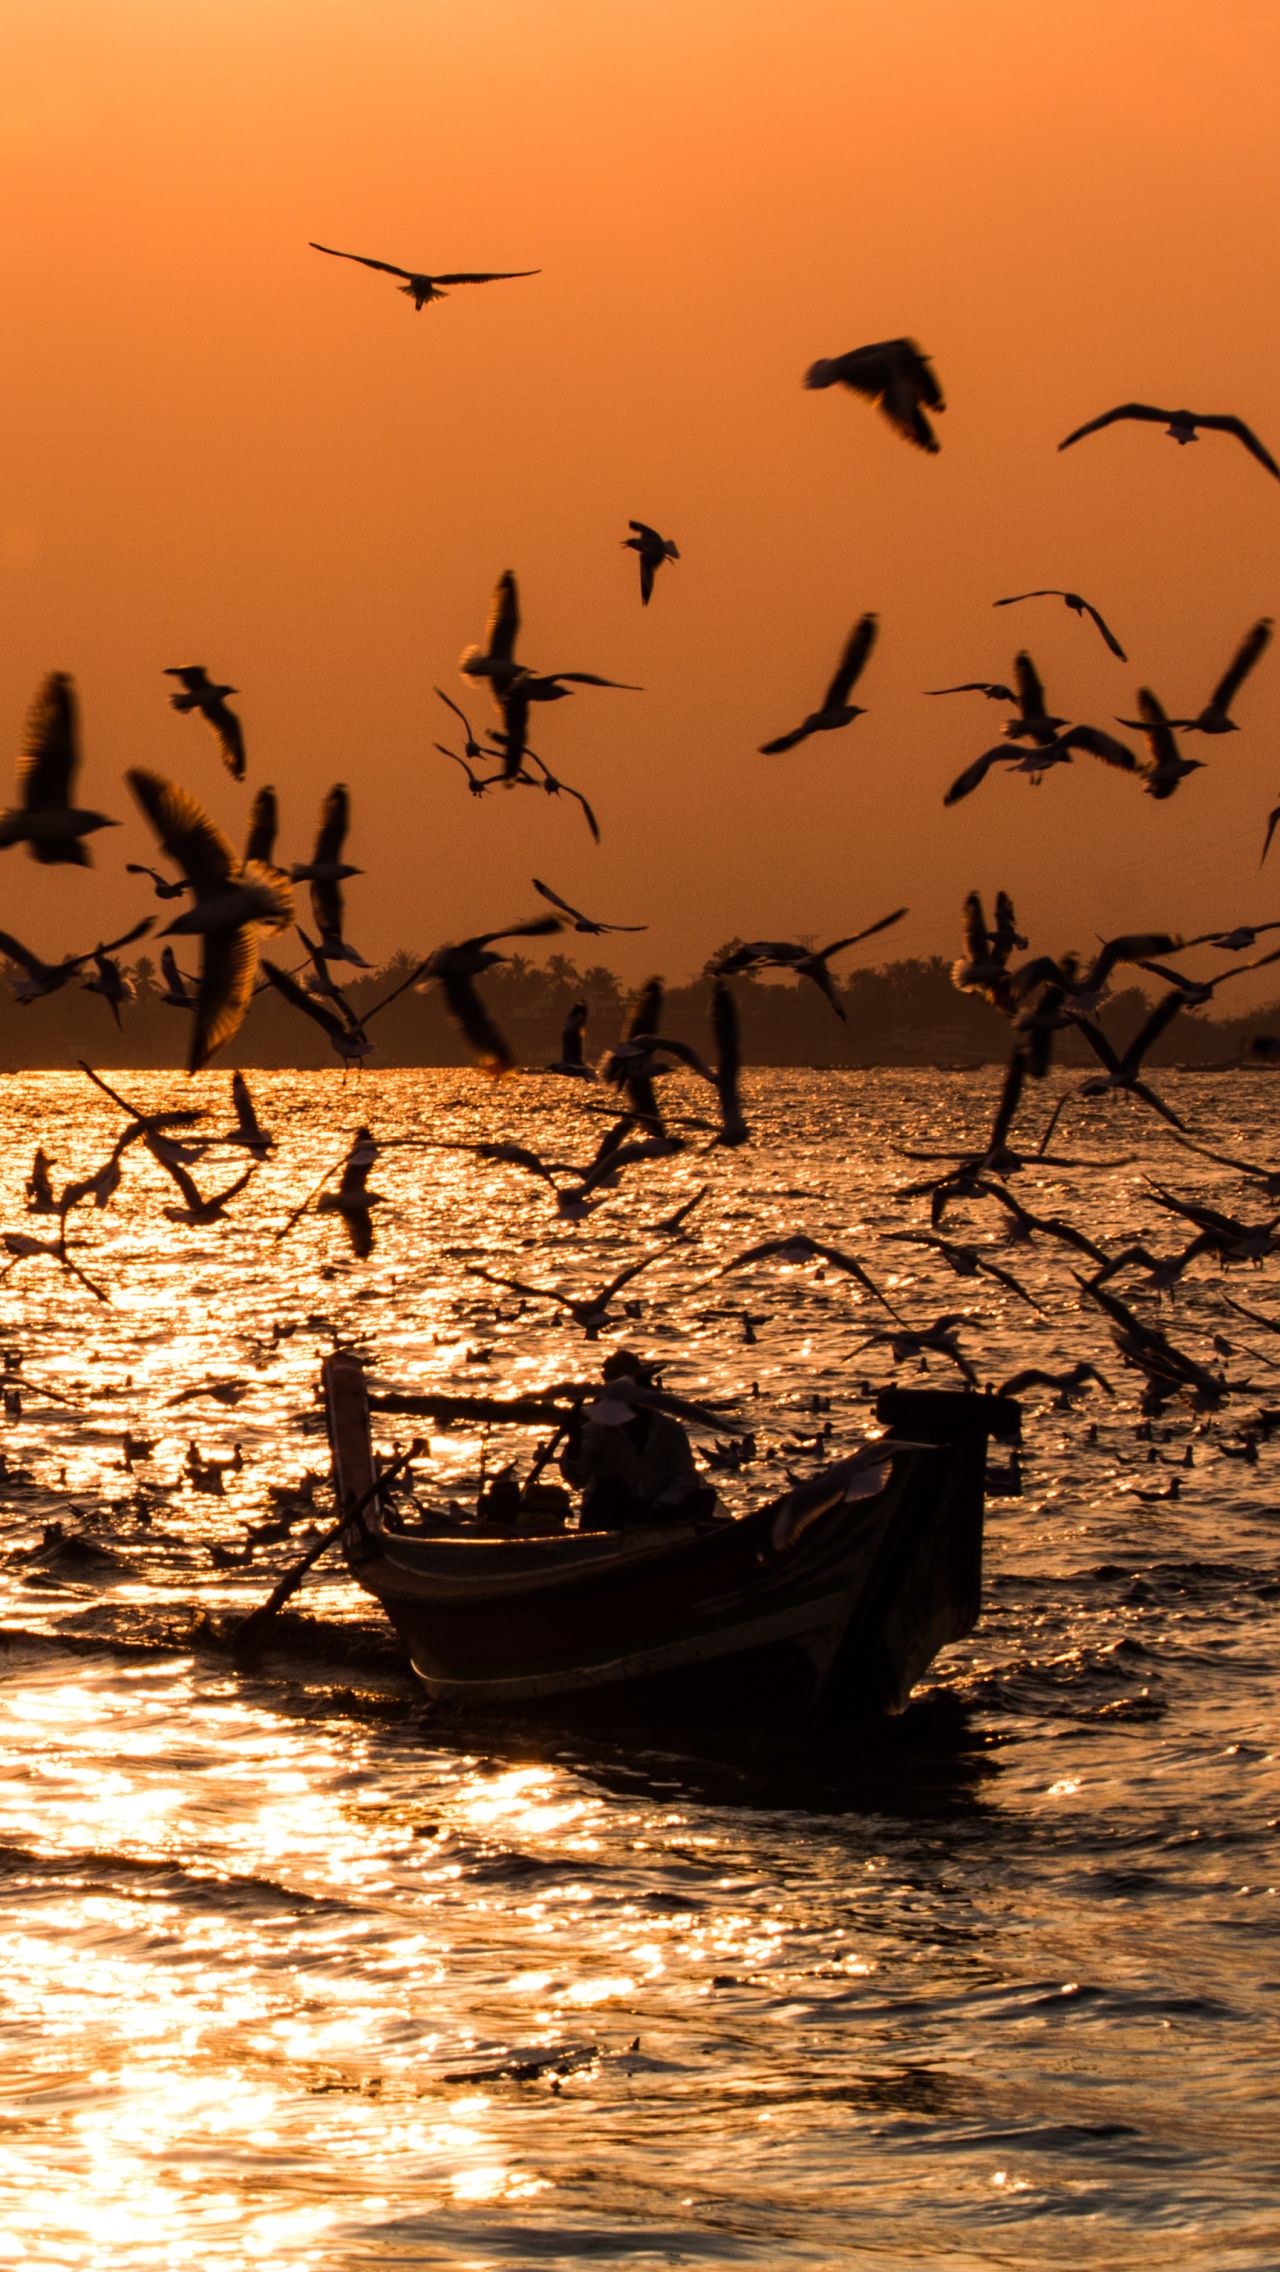 Прогулка на лодке в воде со стаей «танцующих» птиц. Завораживающее зрелище!